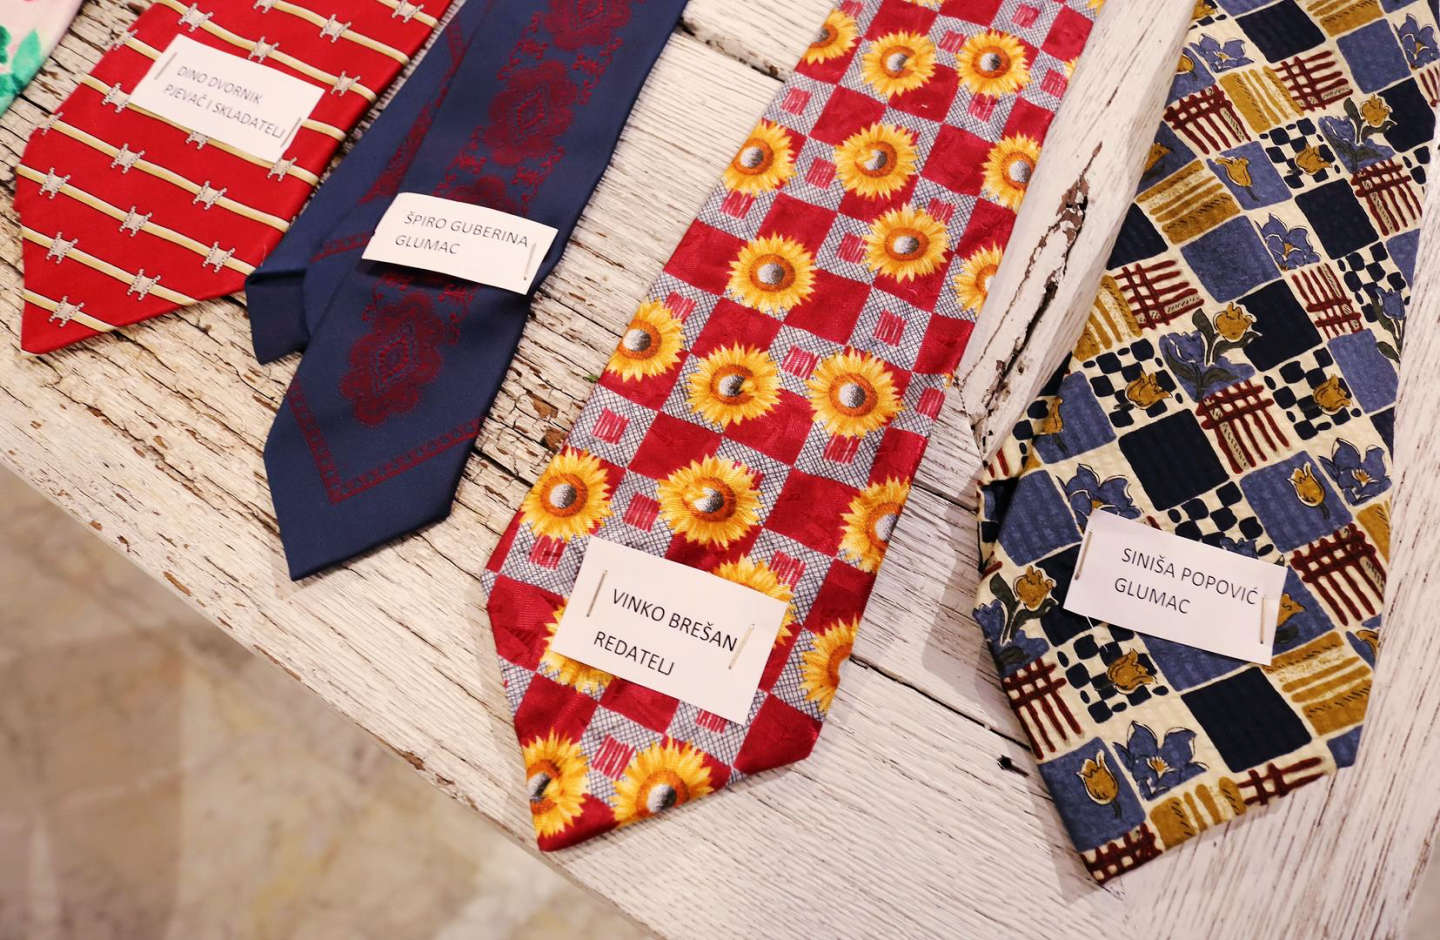 Оригинальные галстуки из магазина Kravata Croata